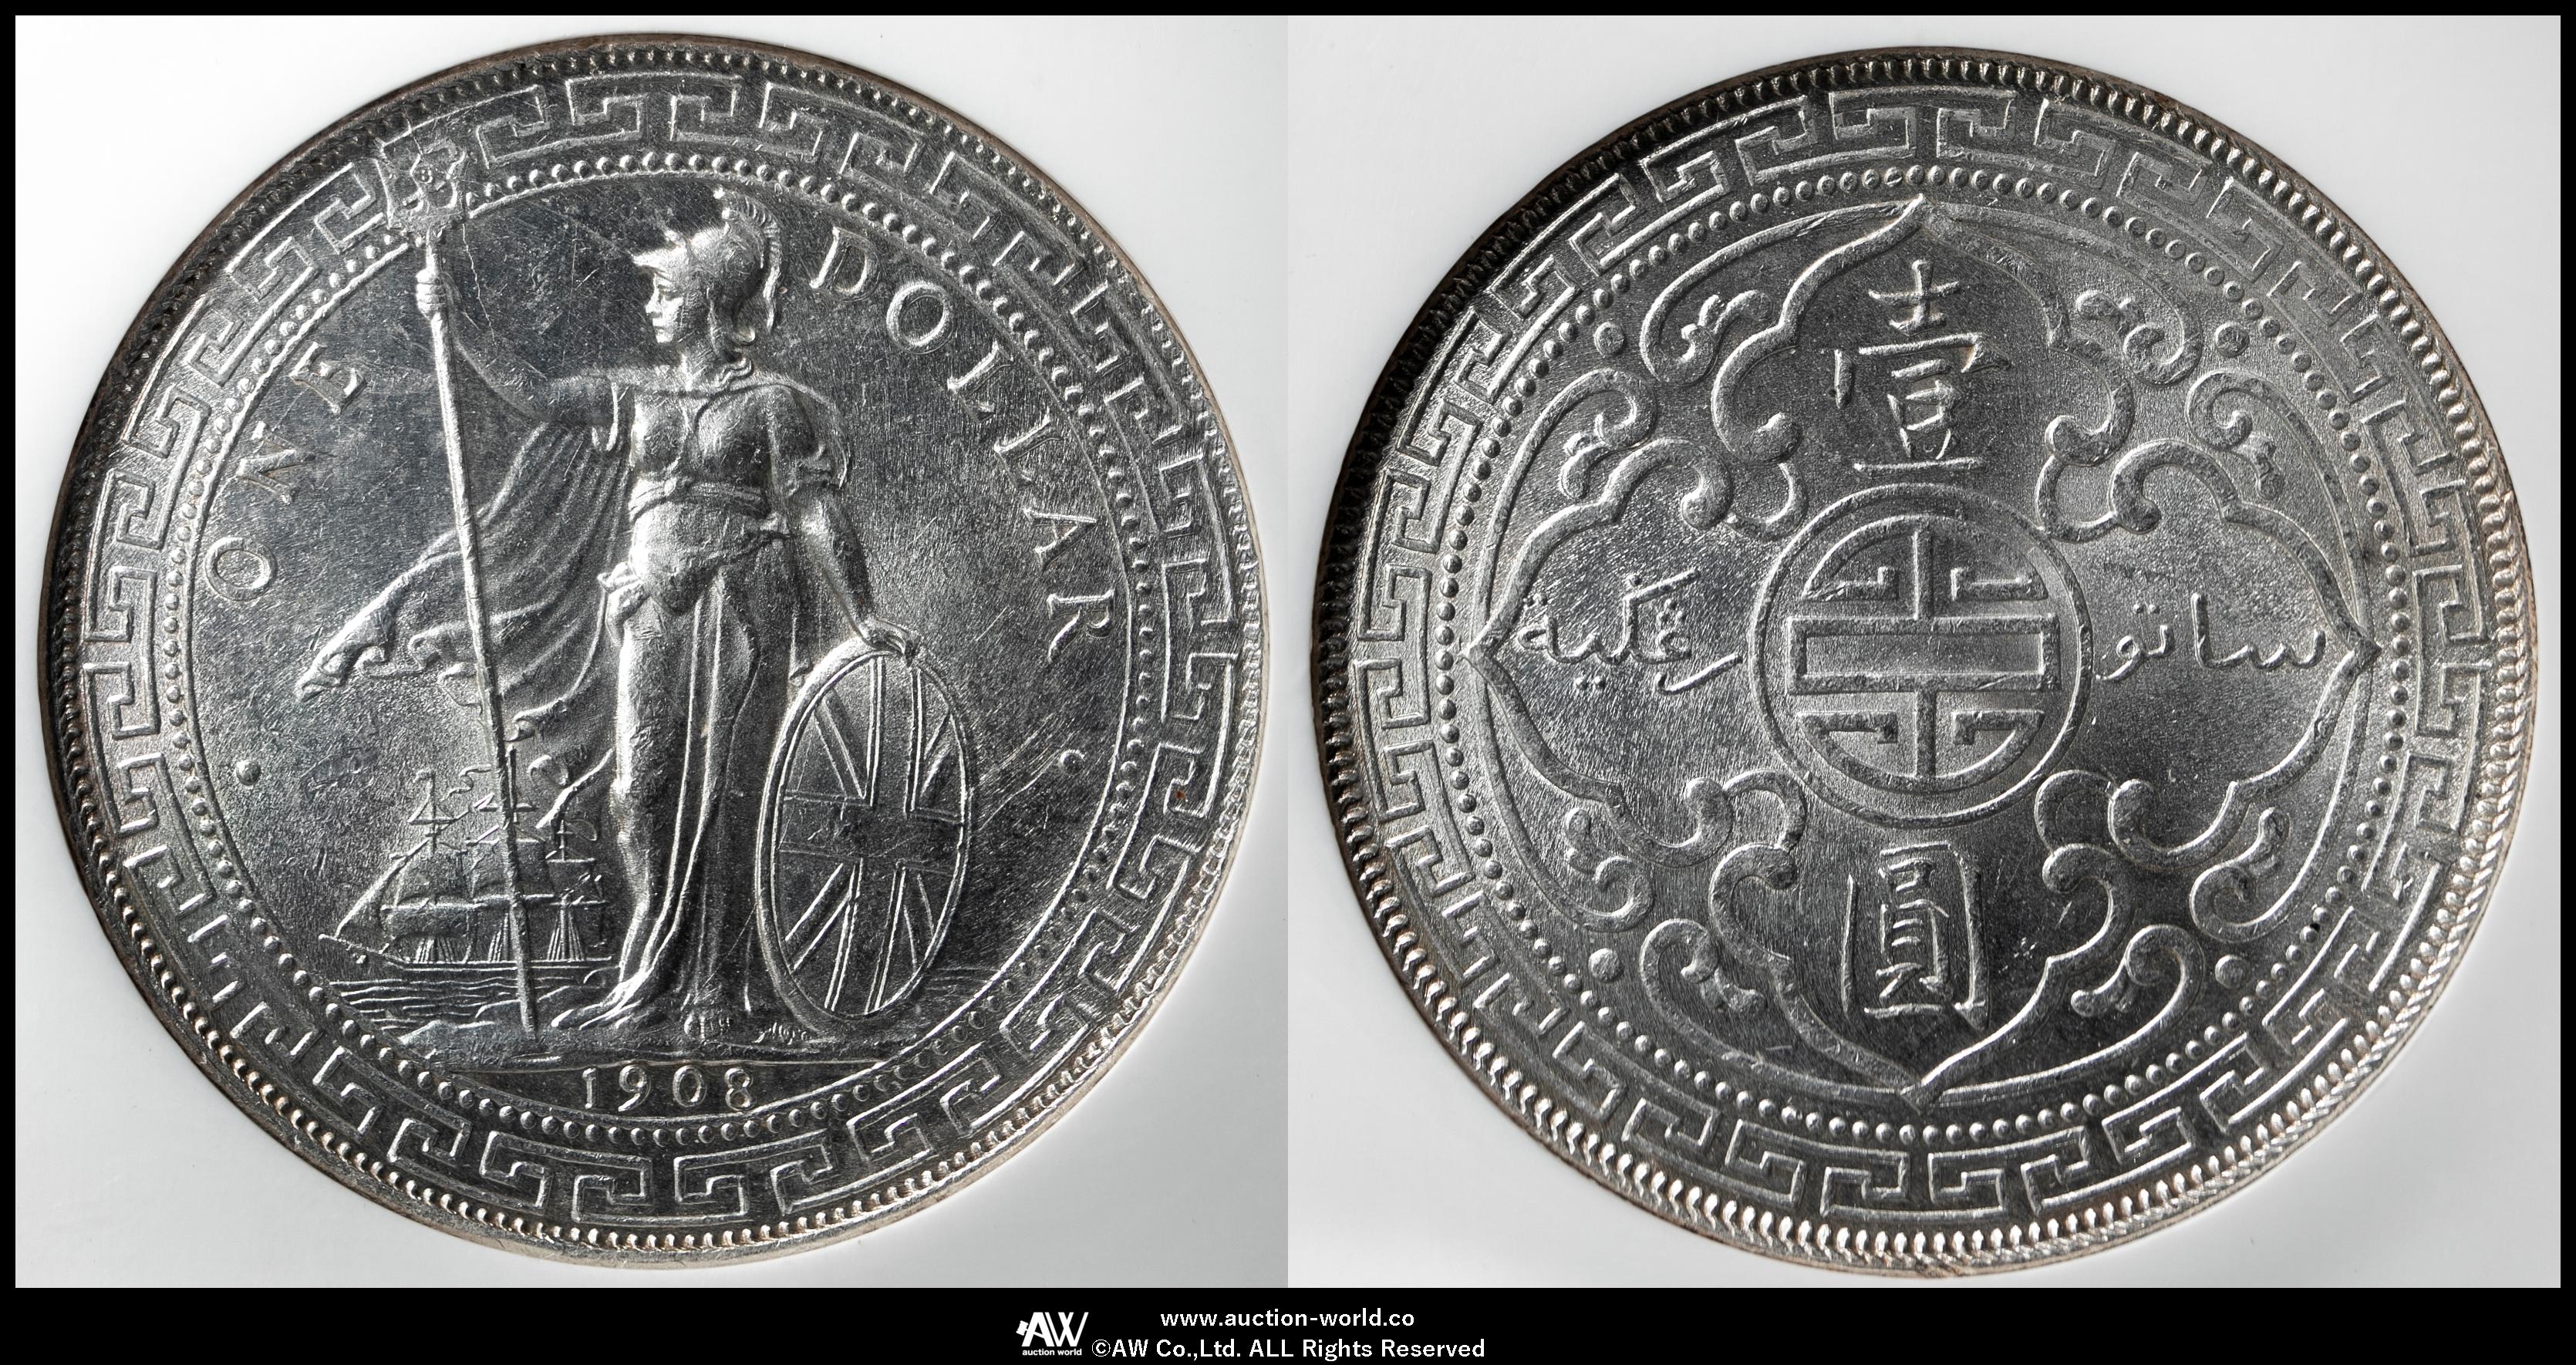 限时竞拍,NGC-MS63British Trade Dollar イギリス貿易銀Dollar 1908B